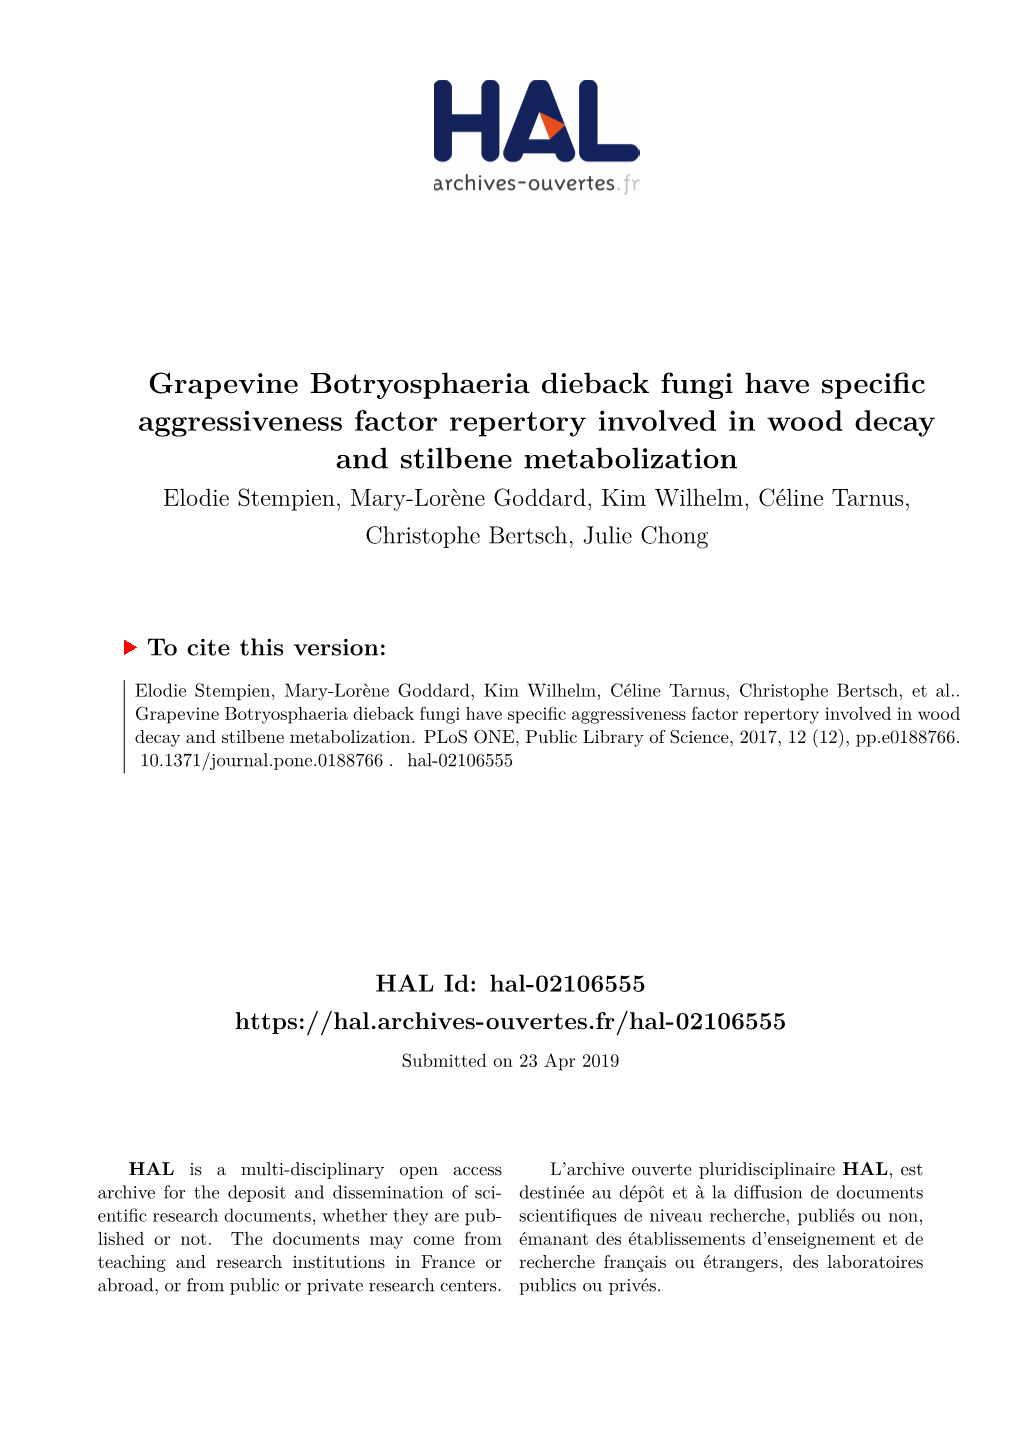 Grapevine Botryosphaeria Dieback Fungi Have Specific Aggressiveness